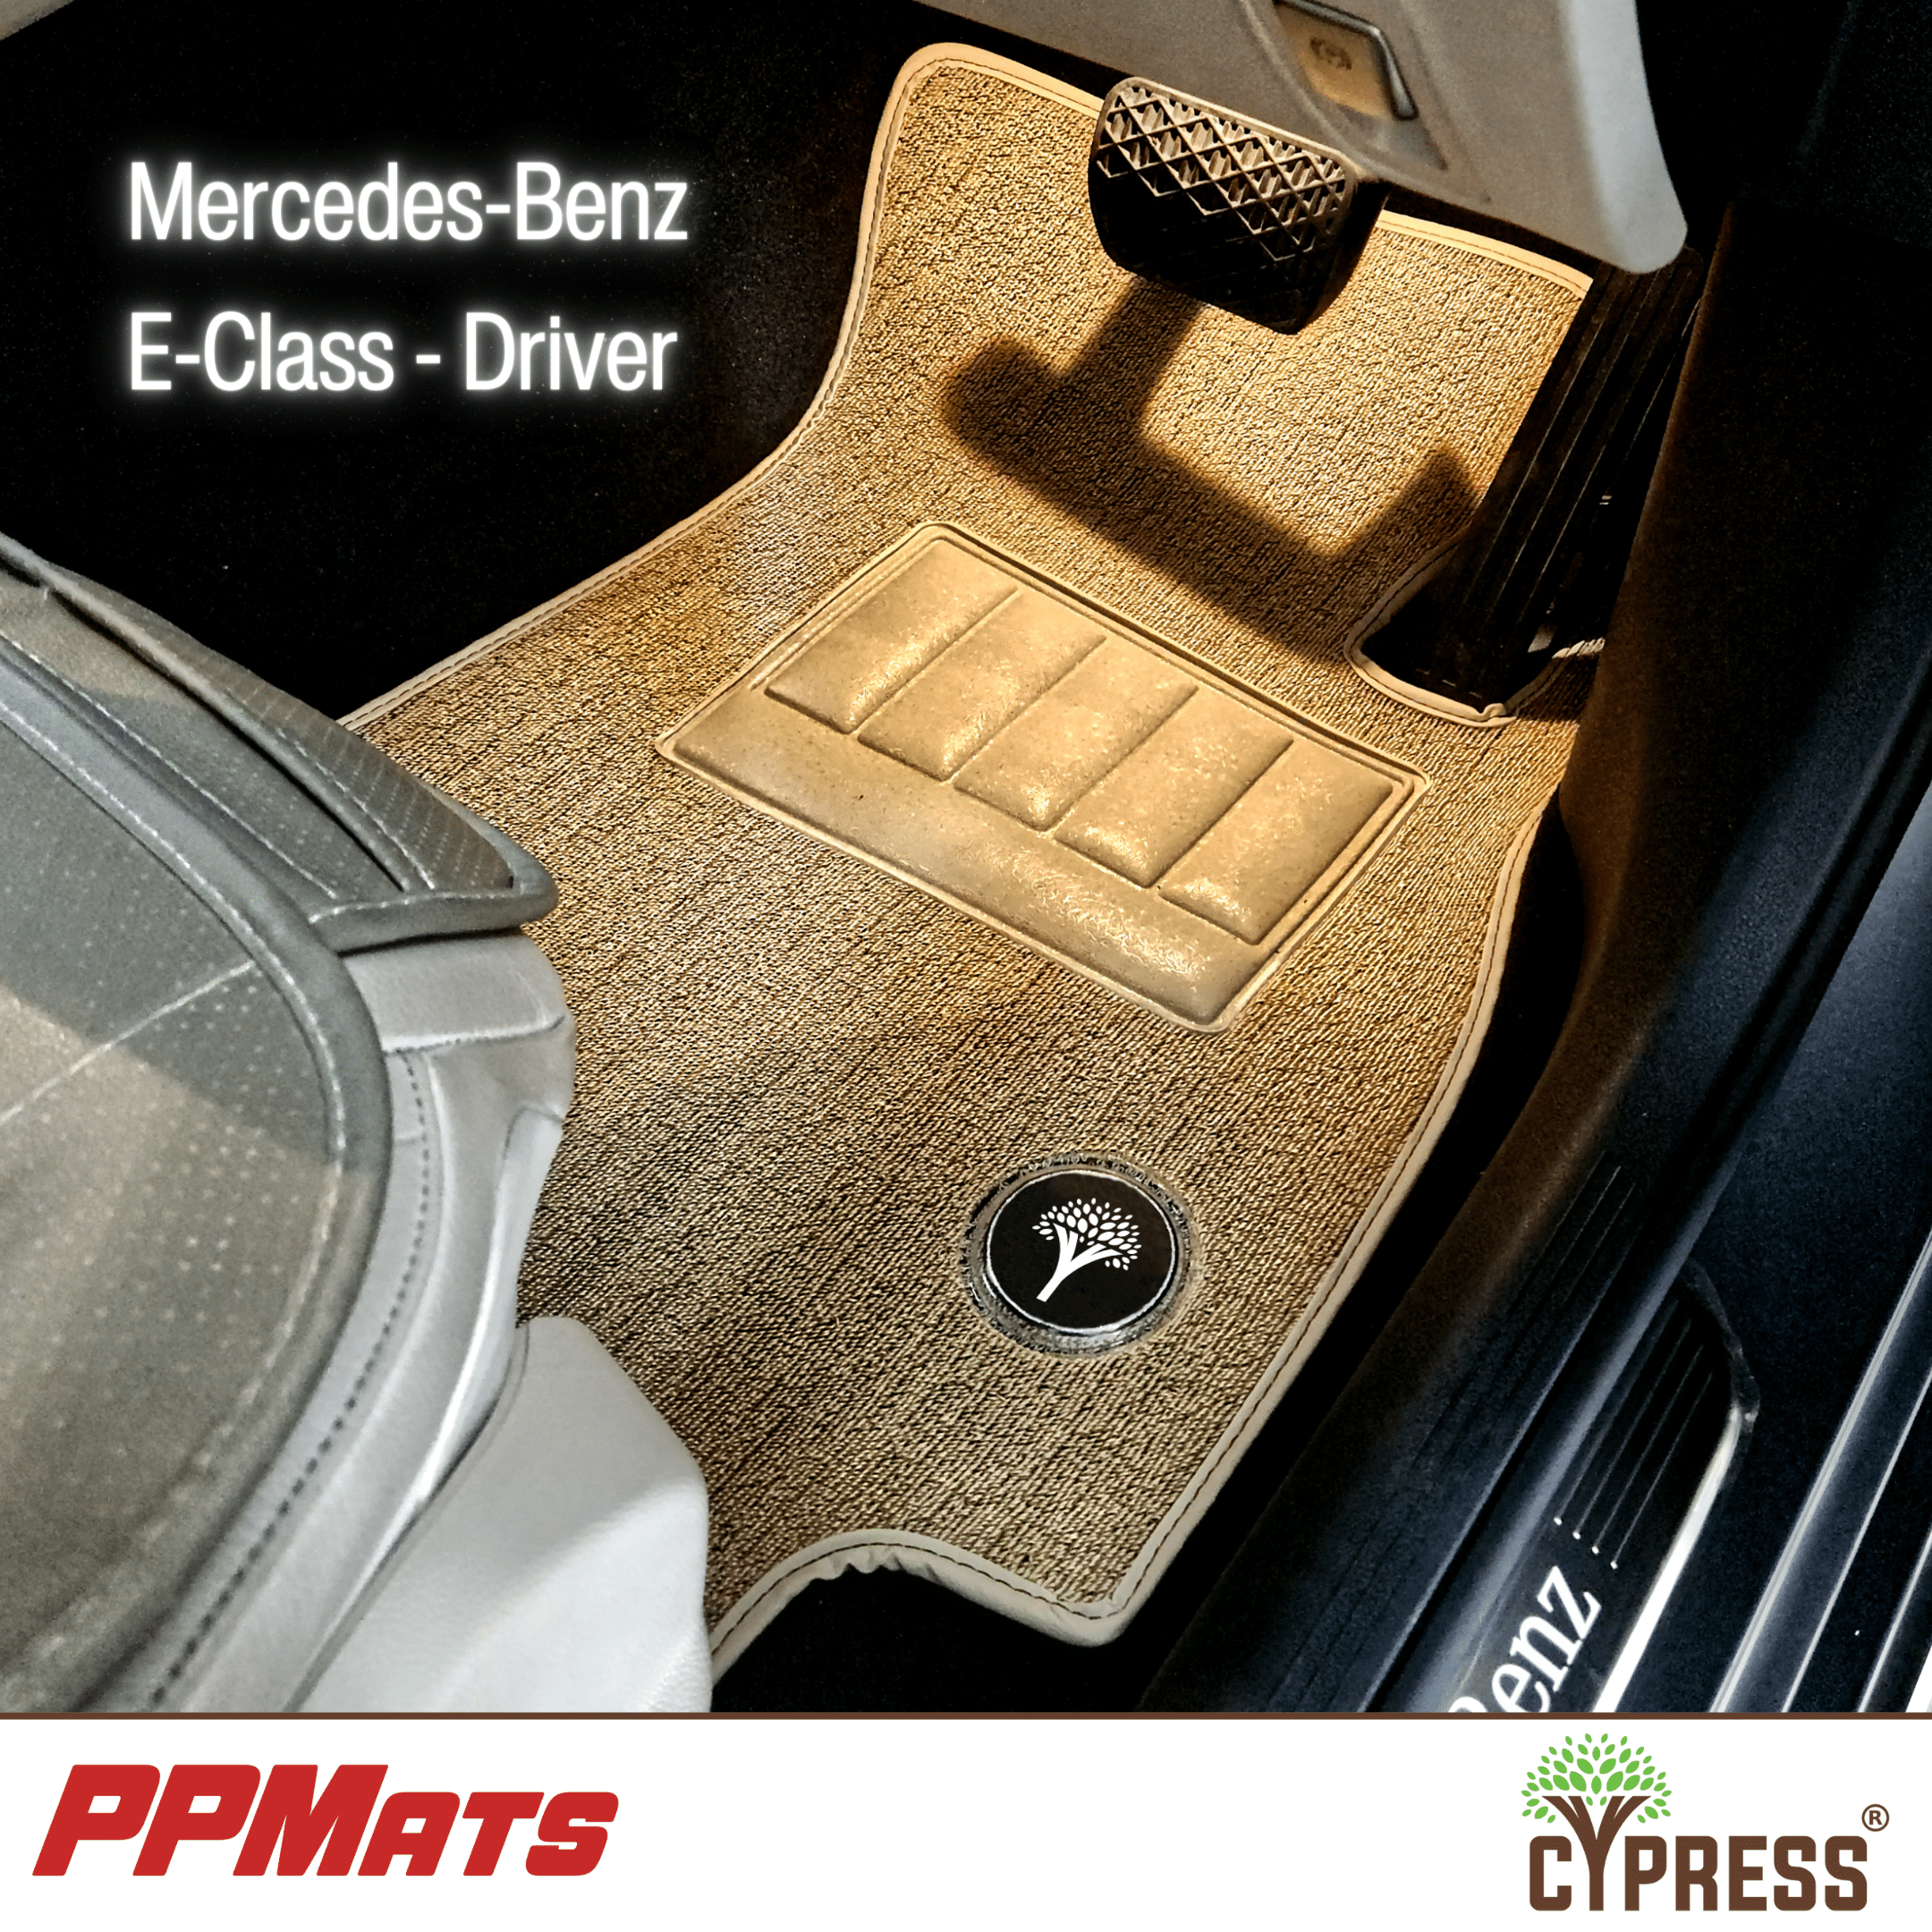 Mercedes E-Class PPMats (Driver)